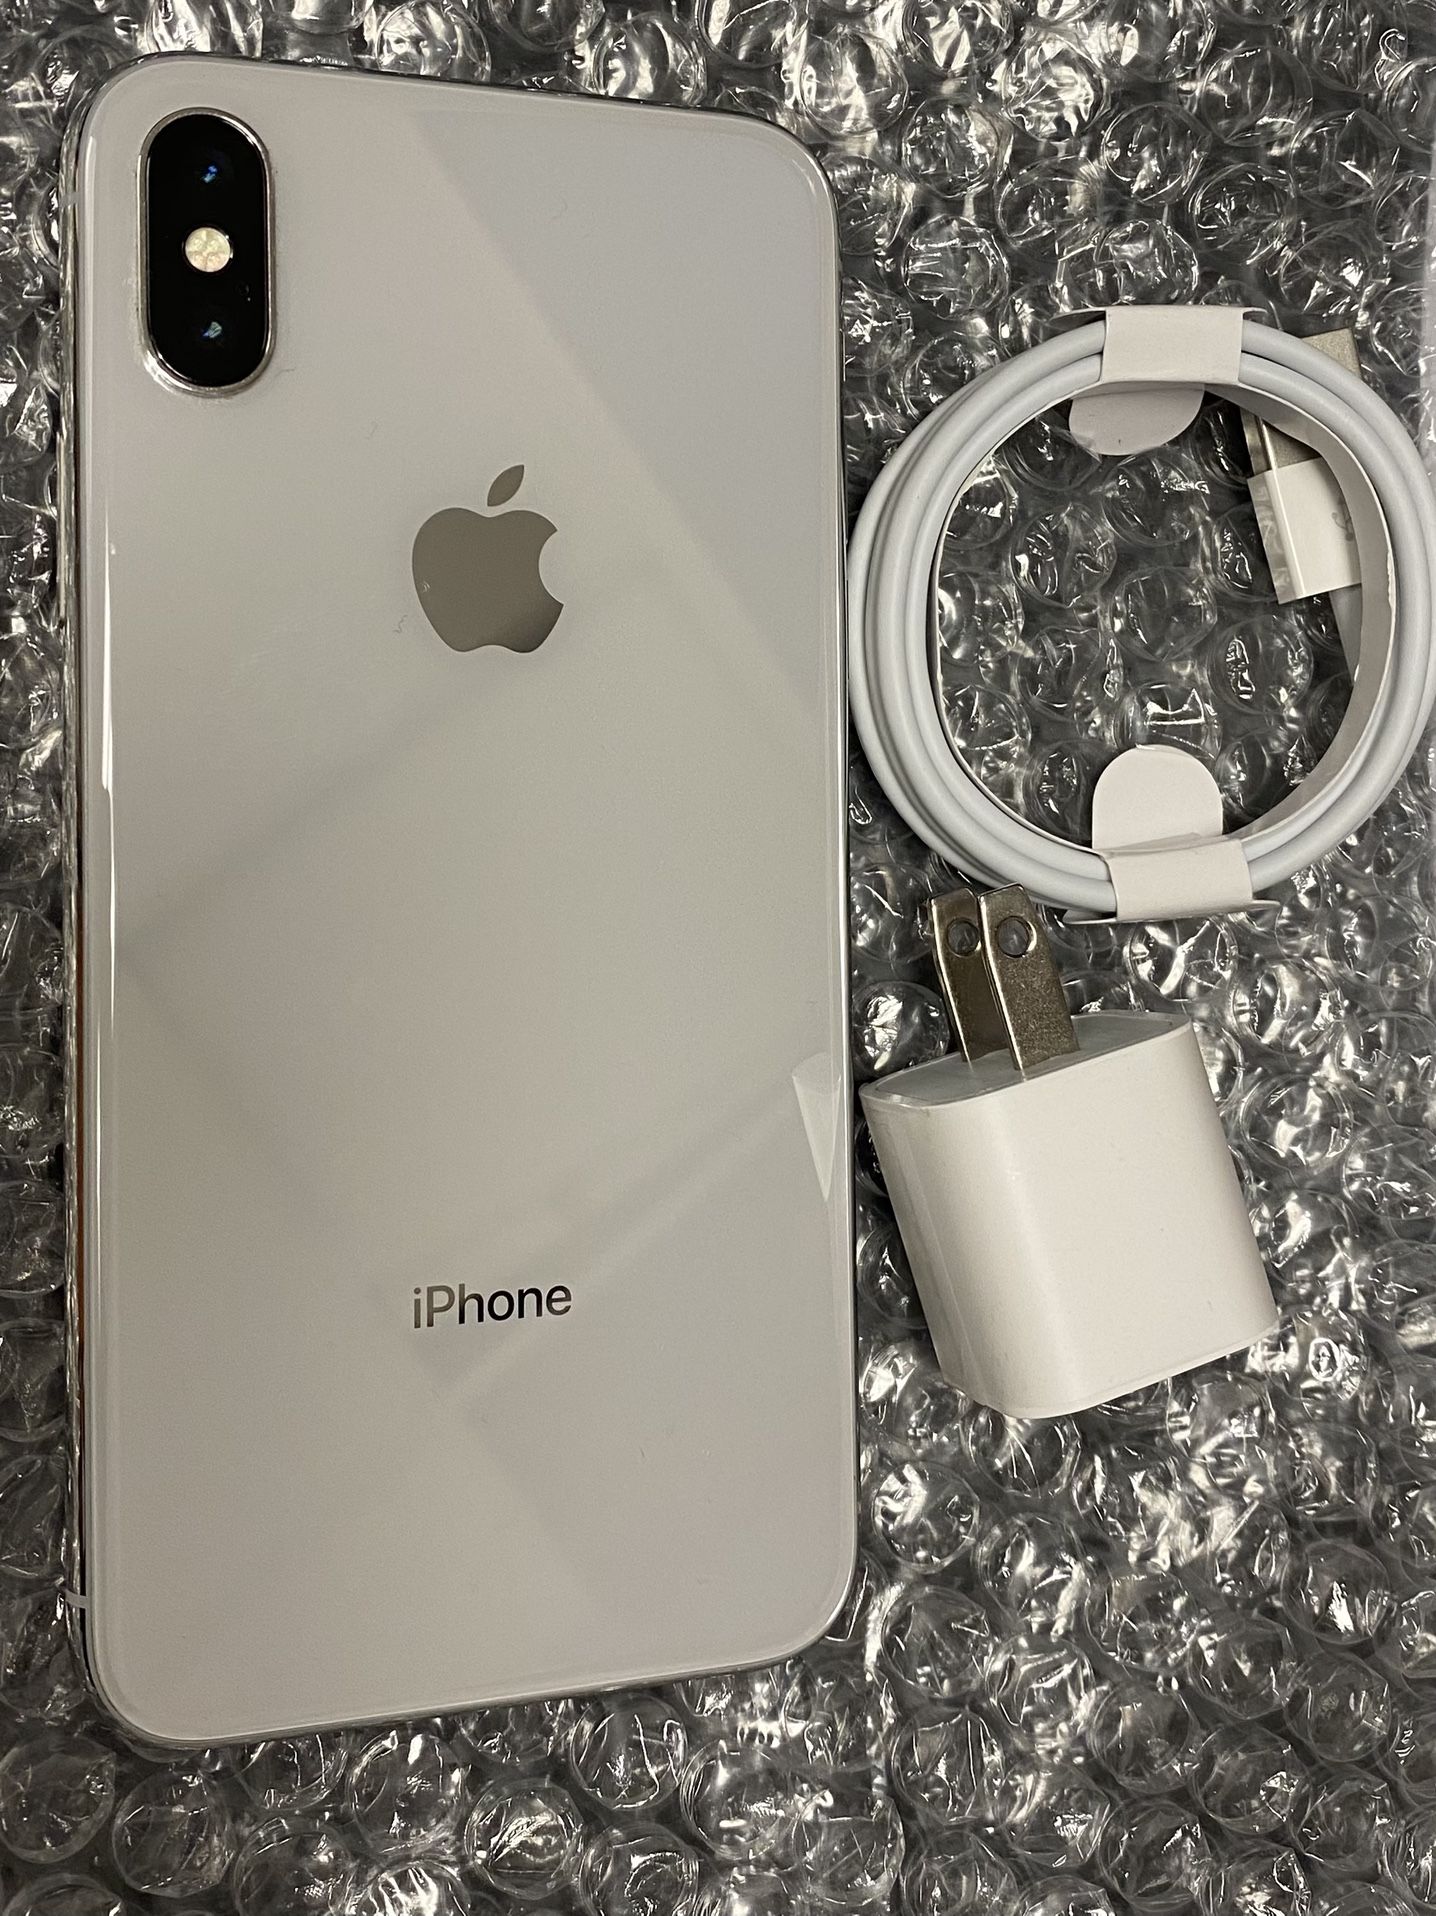 Factory unlocked apple iphone X 256 gb, store warranty!